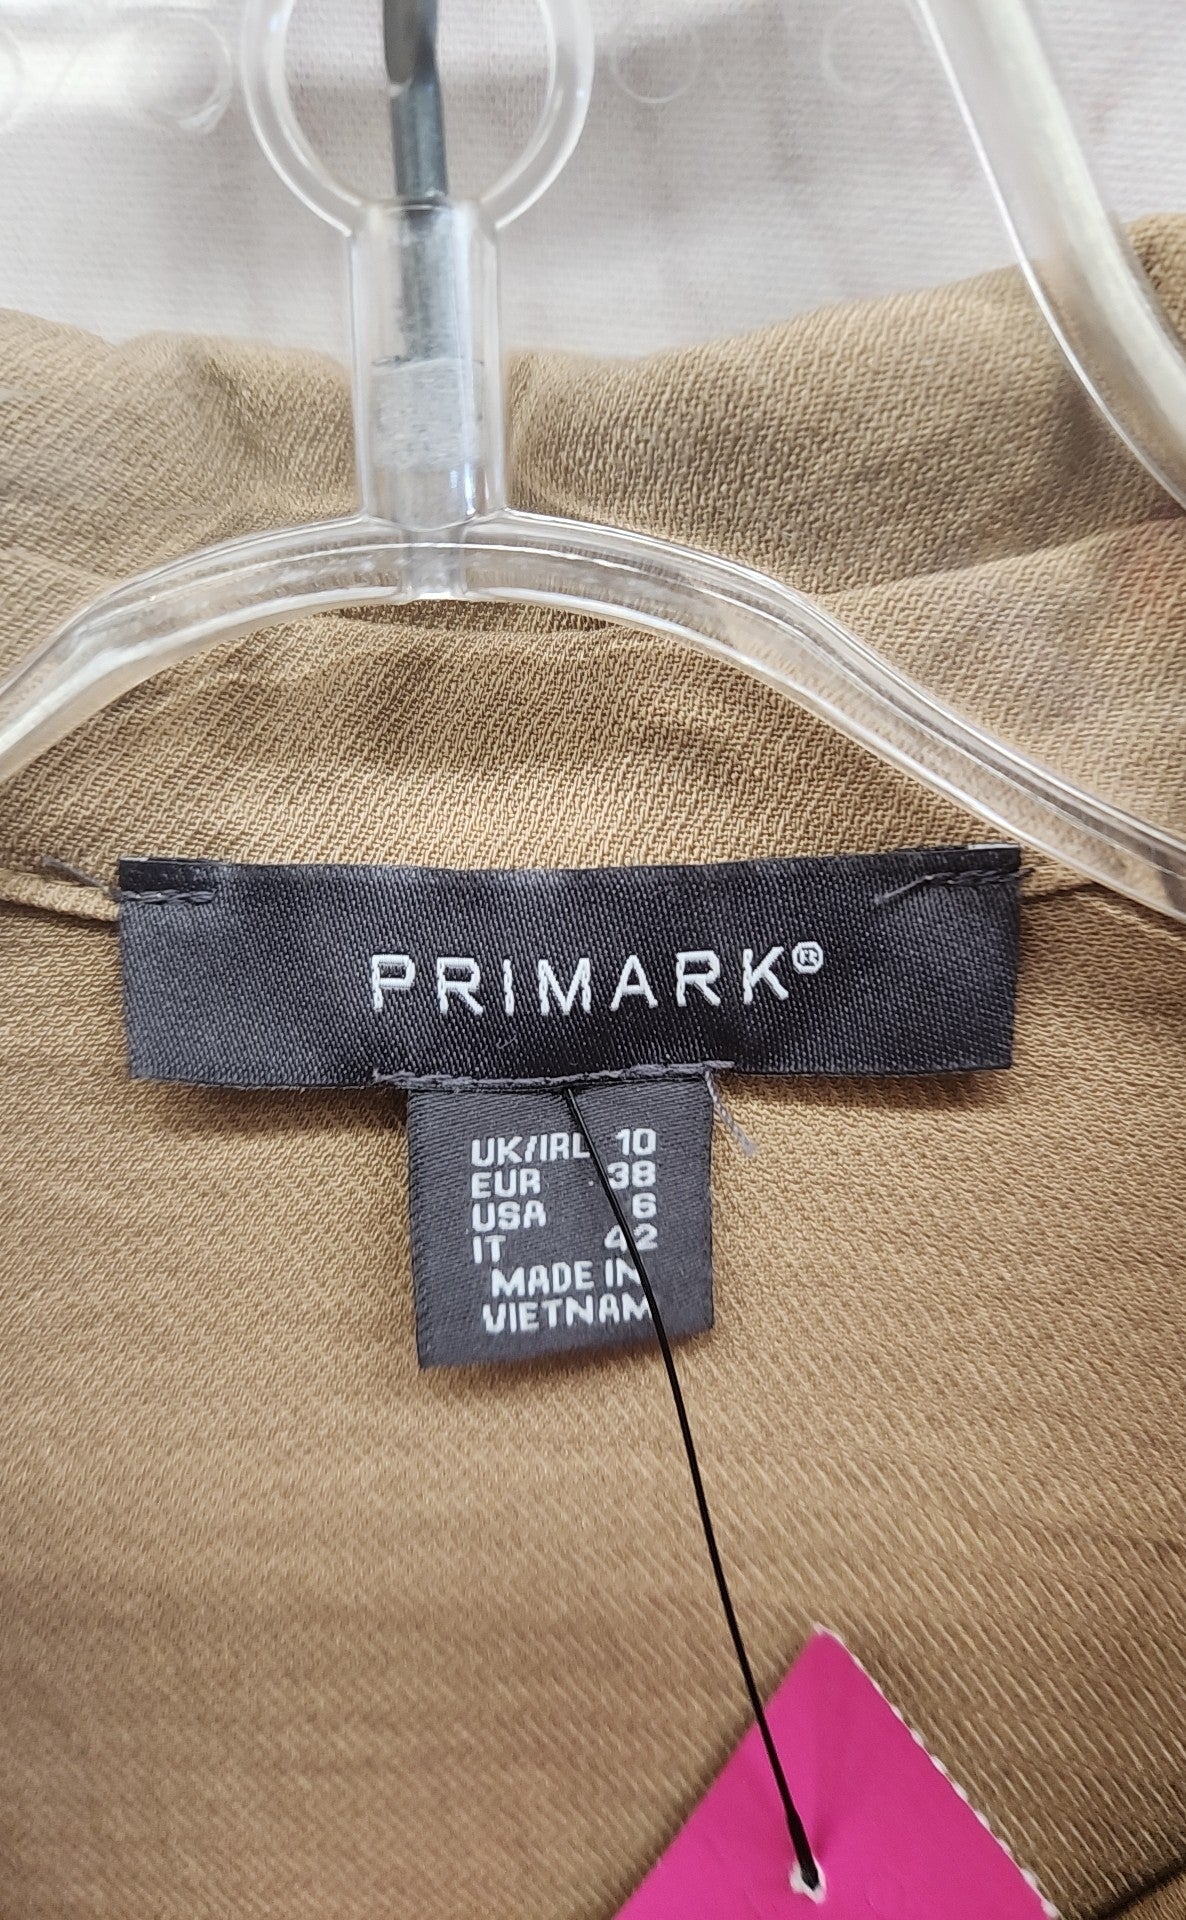 Primark Women's Size 6 Brown Short Sleeve Top